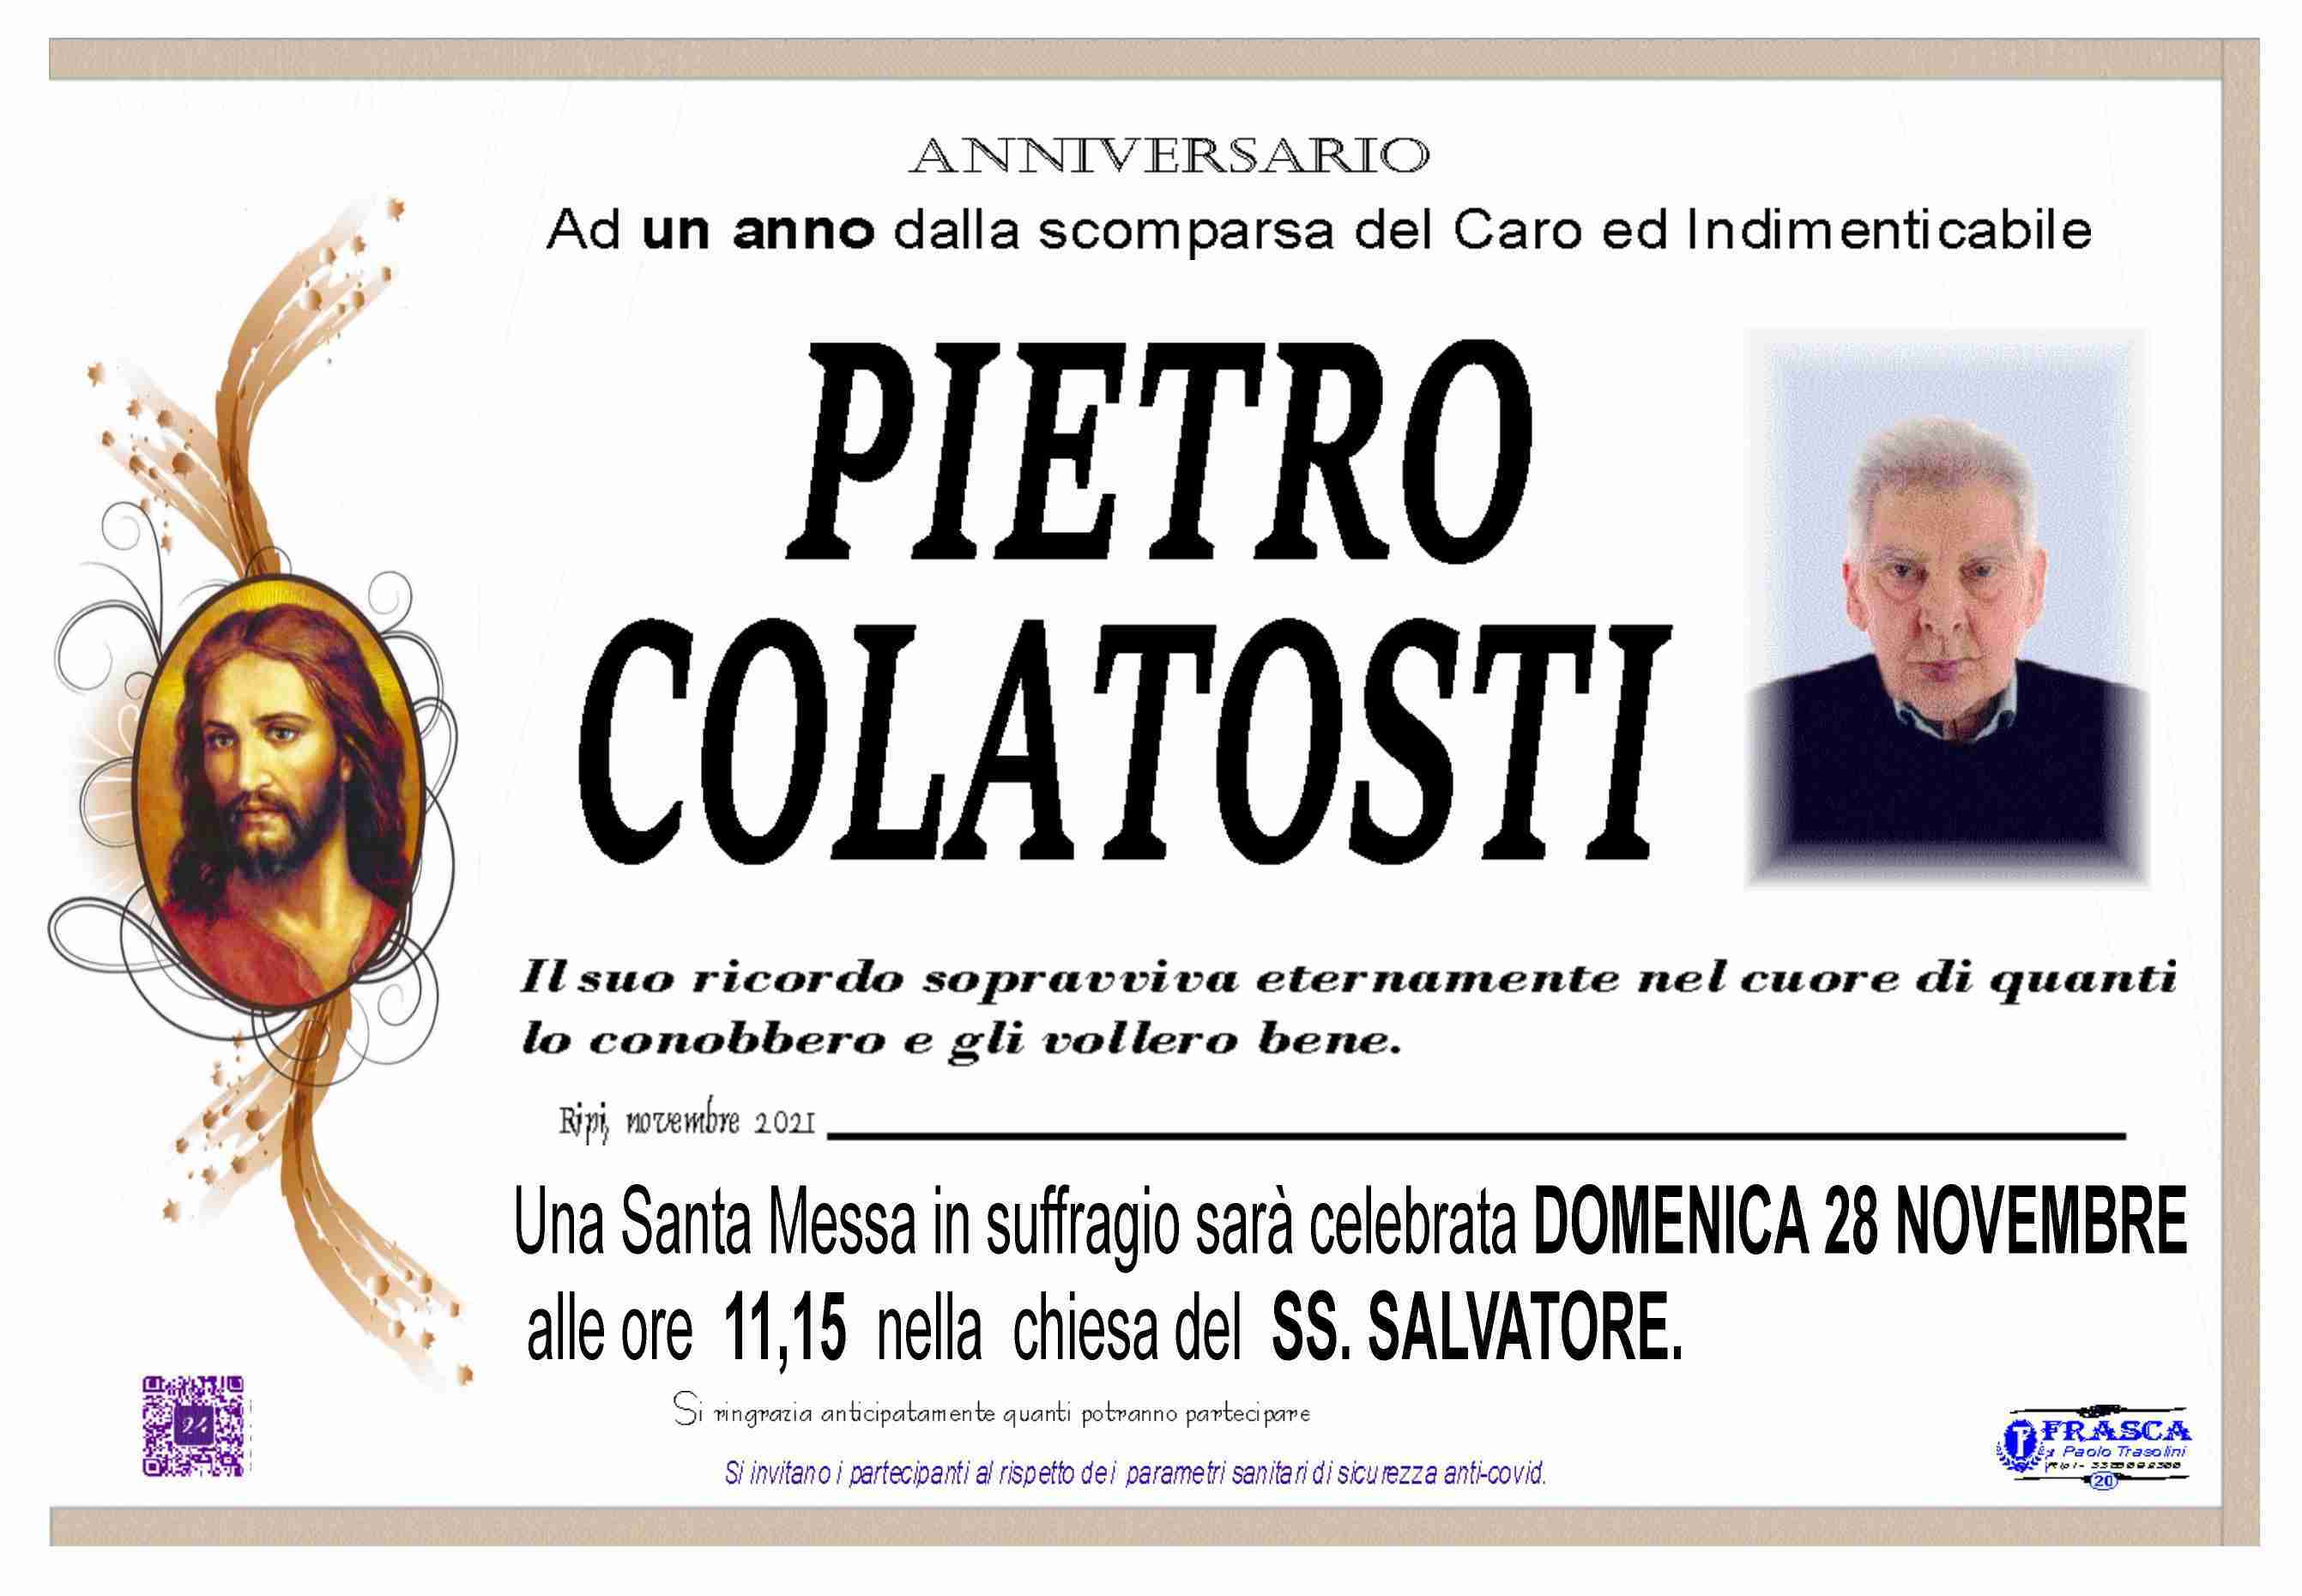 Pietro Colatosti